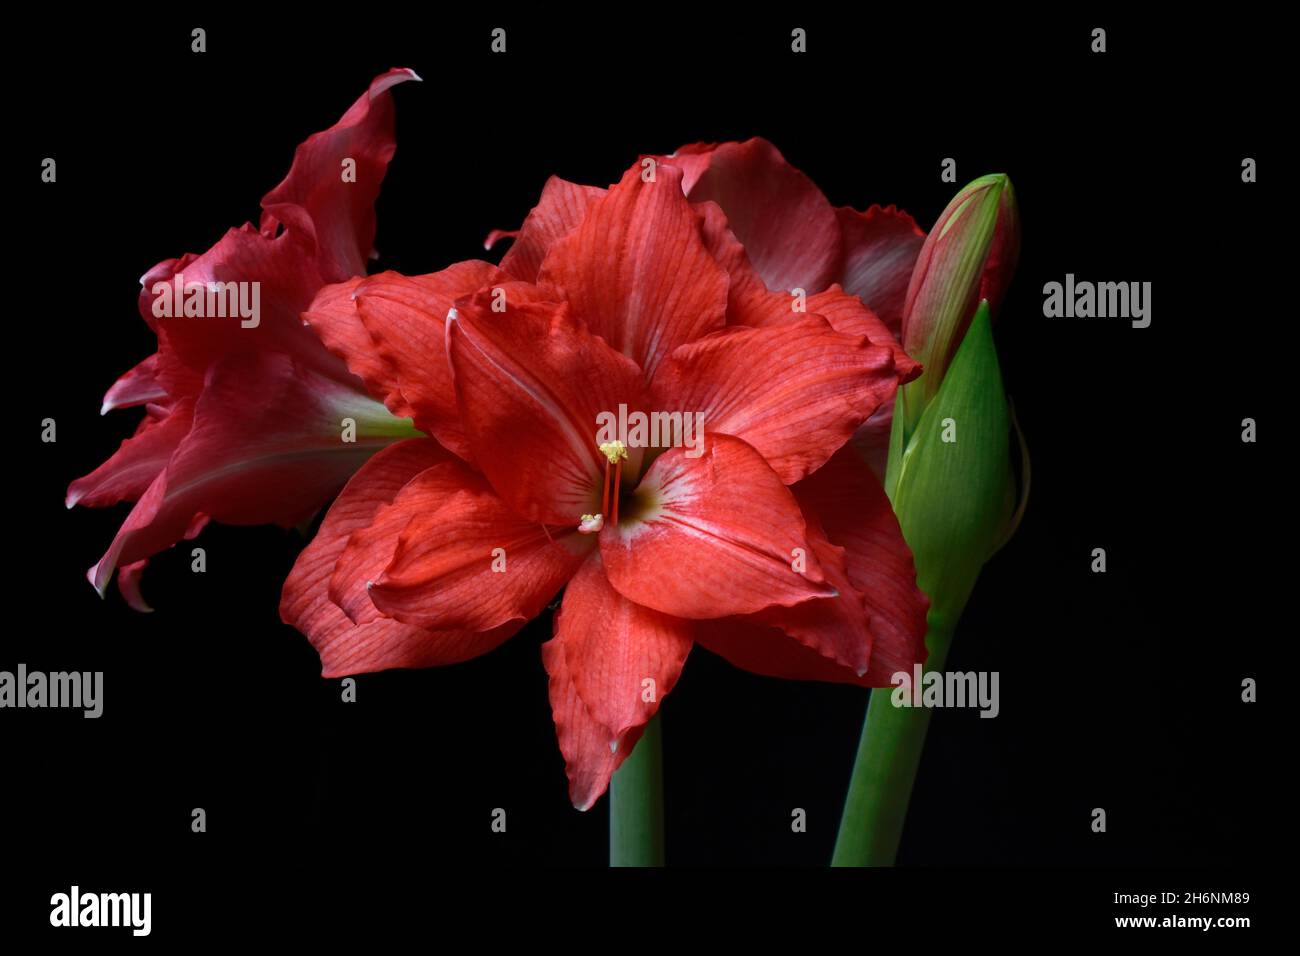 Flowering Amaryllis (Hippeastrum), amaryllis Stock Photo